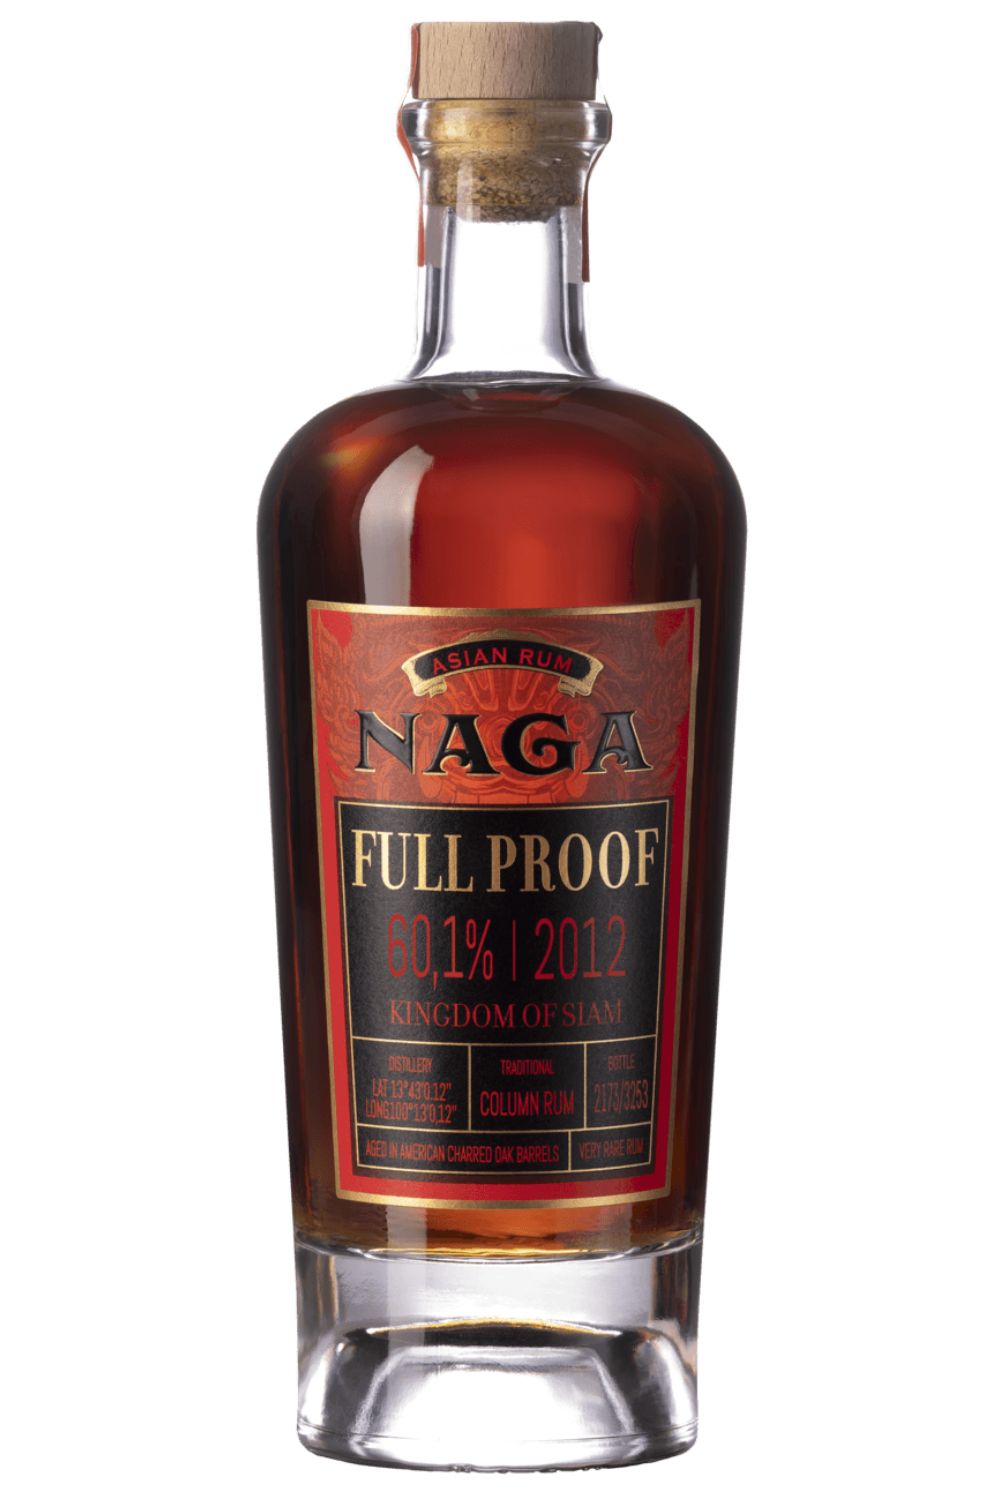 Naga Full Proof 2012